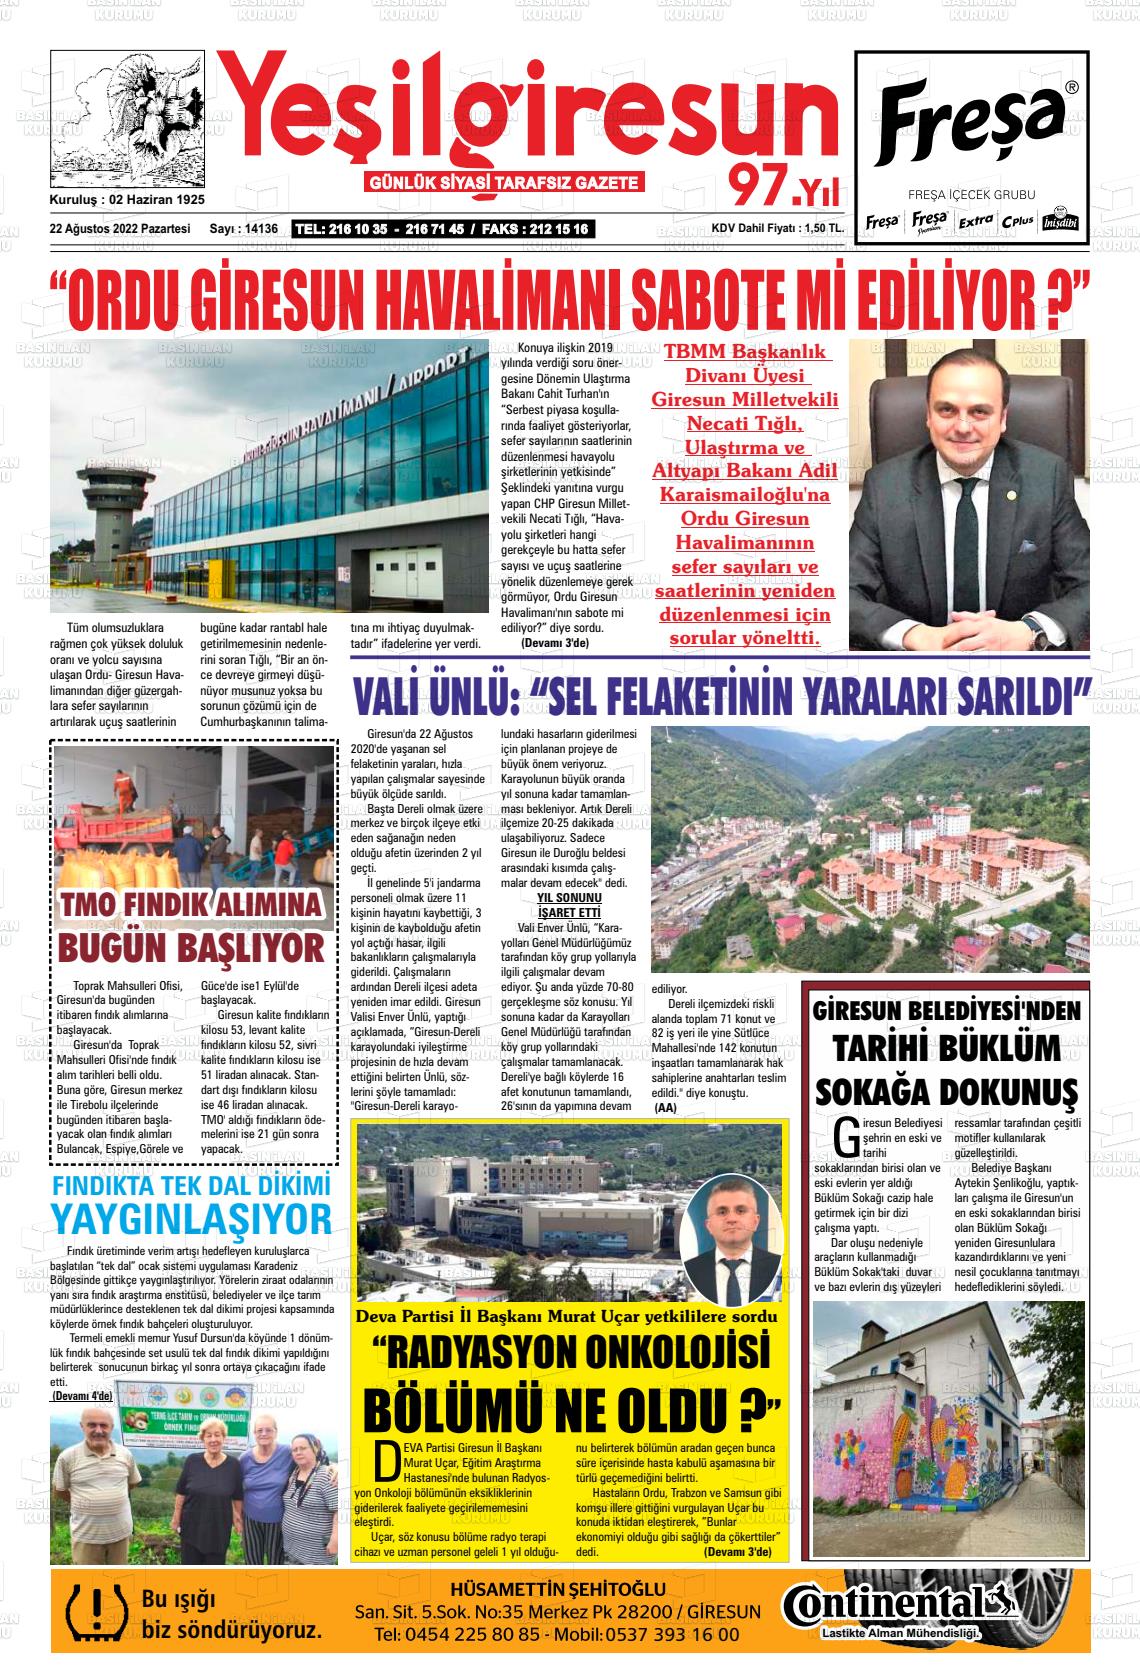 23 Ağustos 2022 Yeşil Giresun Gazete Manşeti